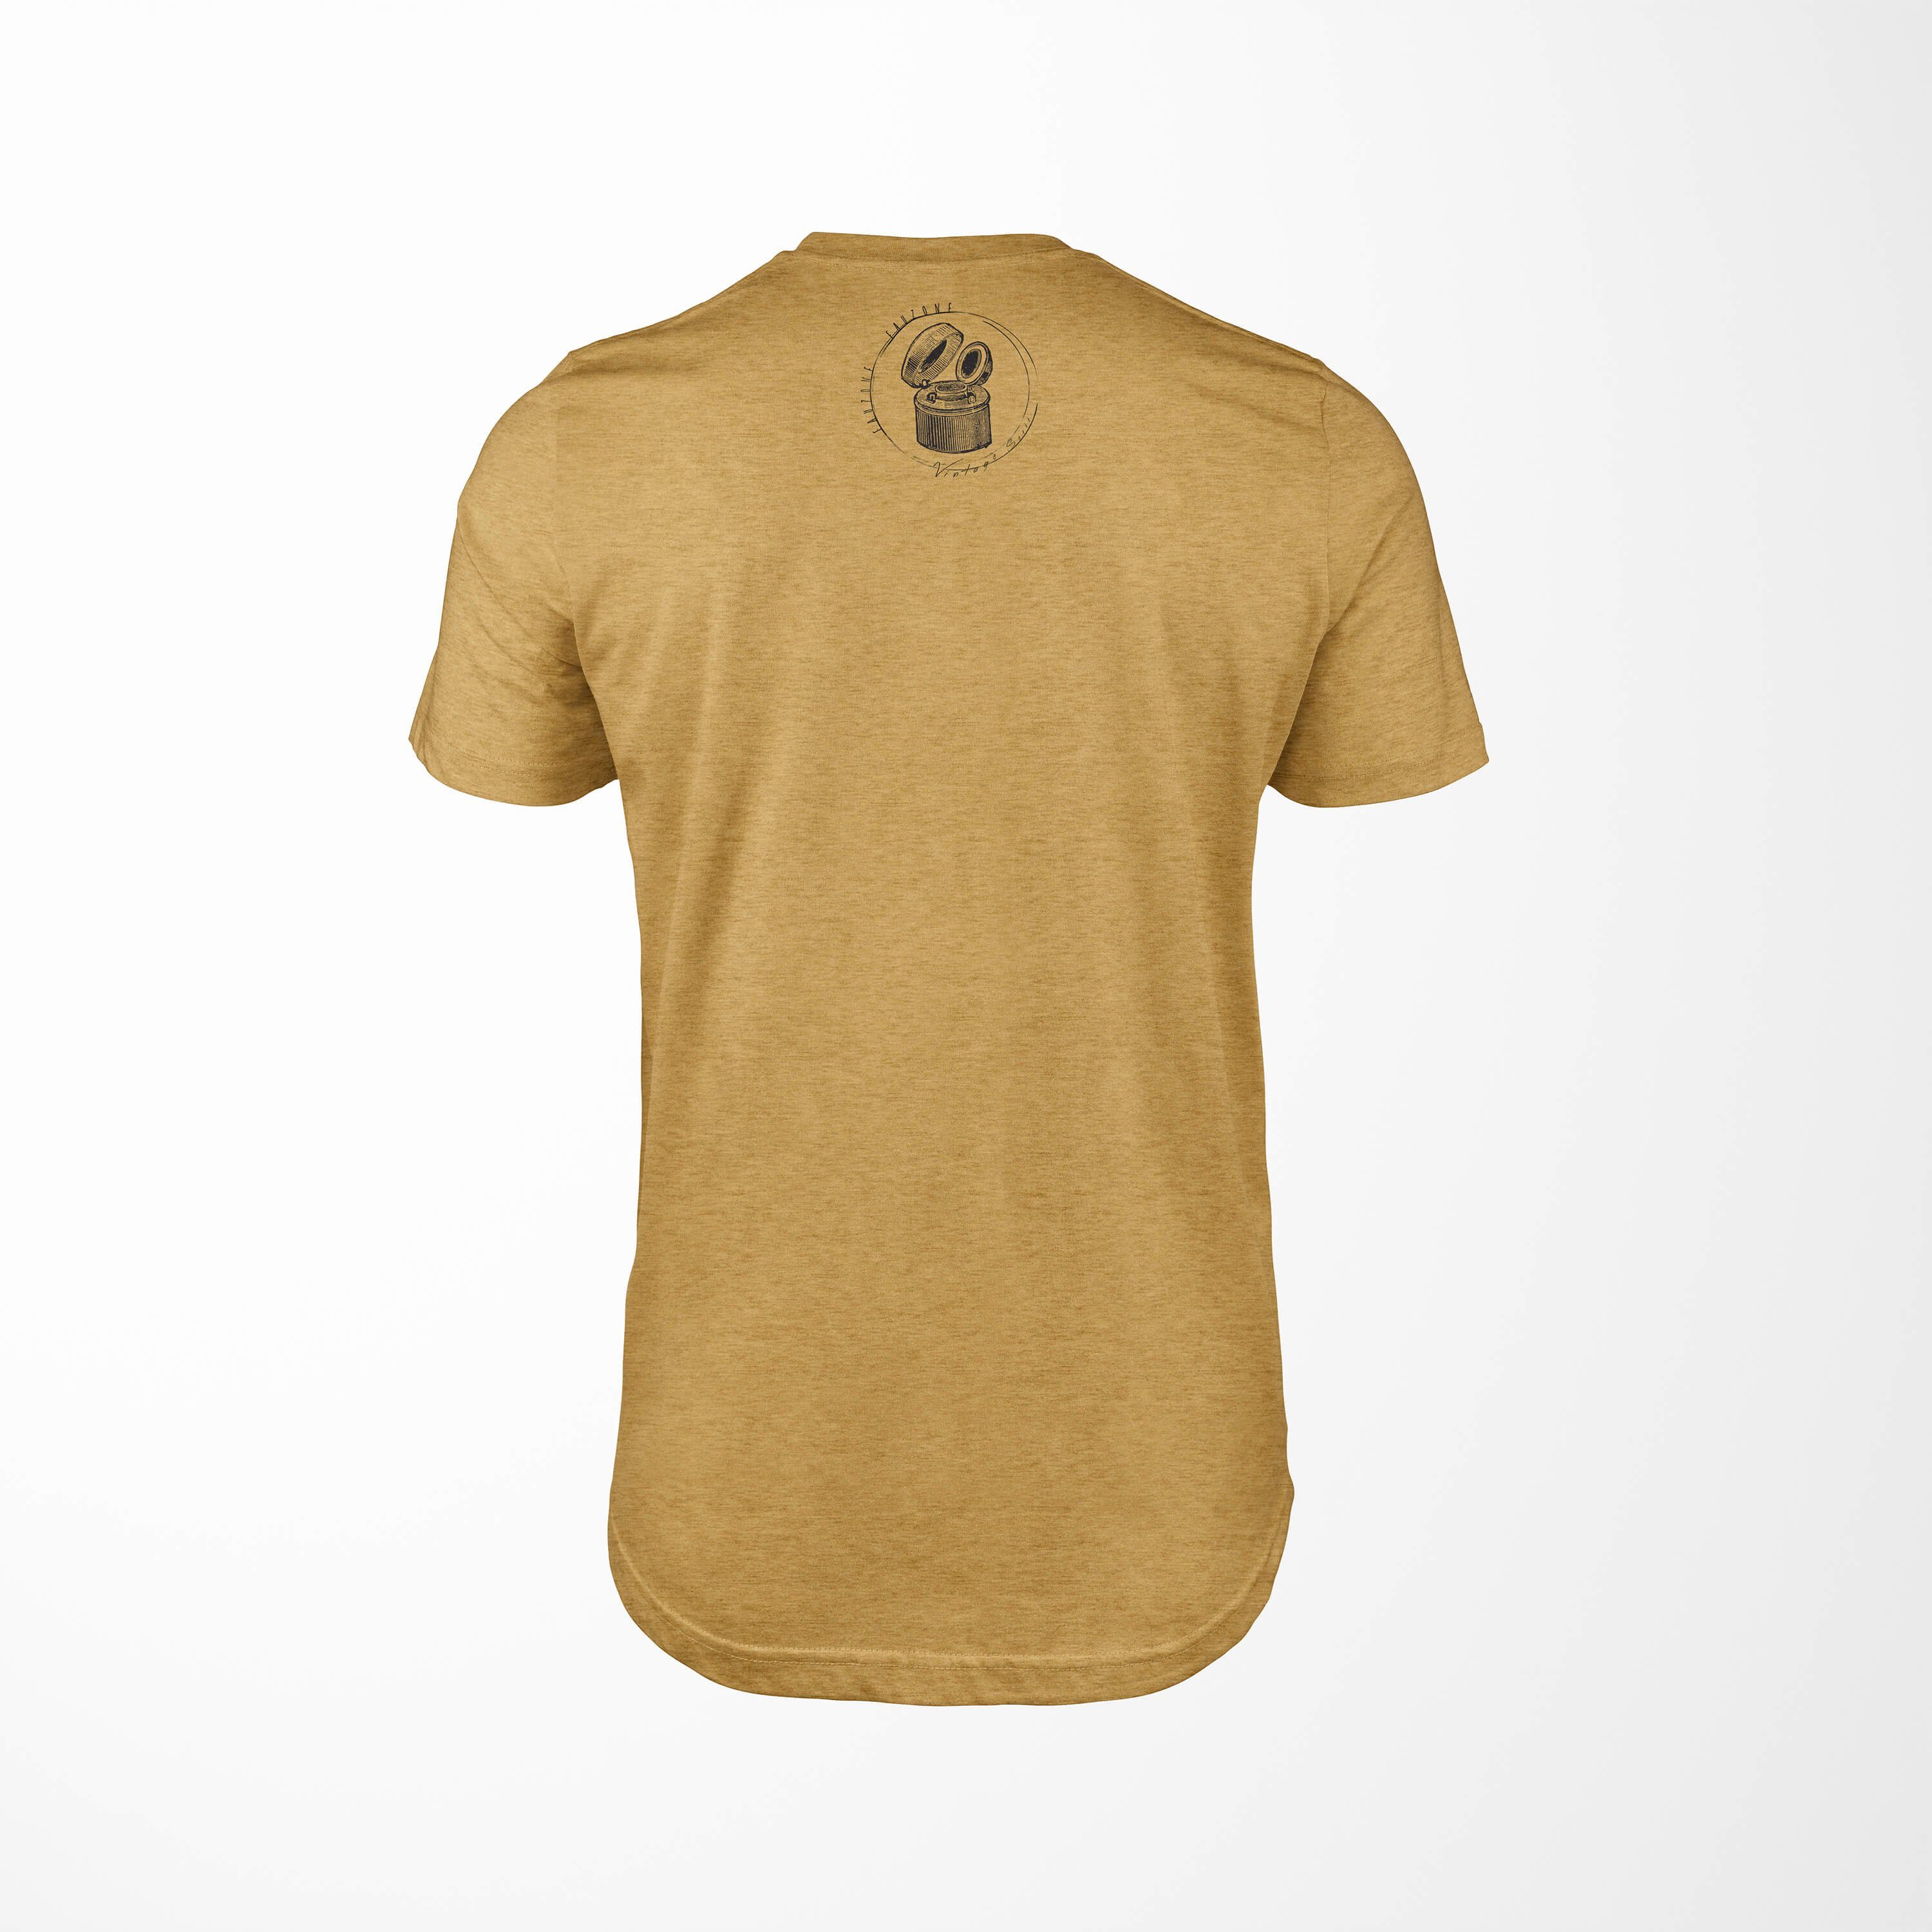 Sinus Art T-Shirt Vintage Herren Tintenfass Gold T-Shirt Antique